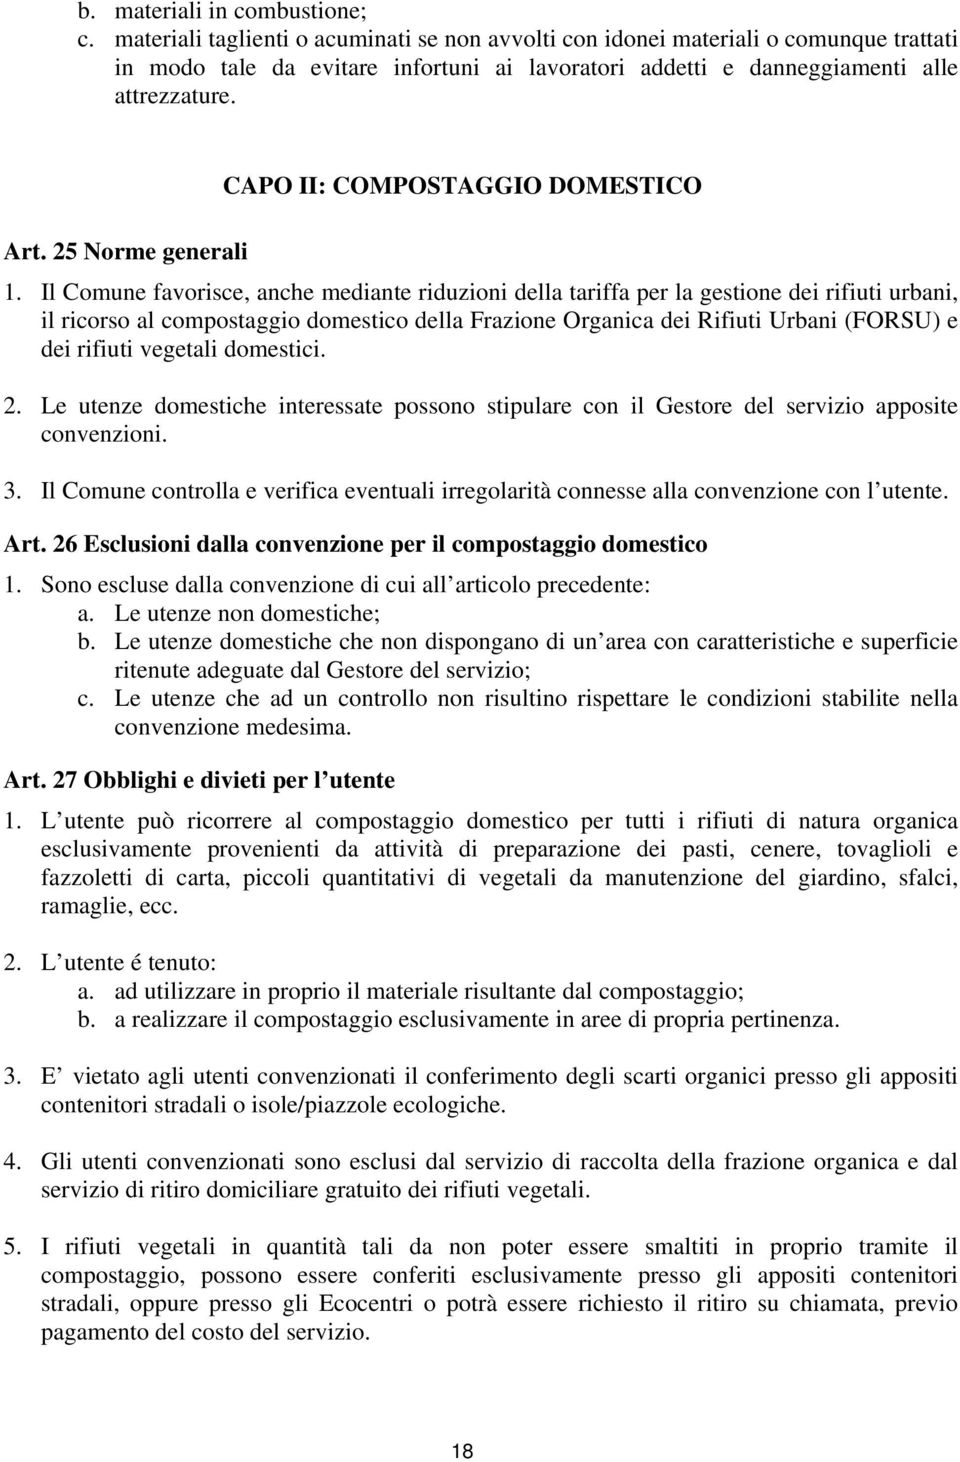 25 Norme generali CAPO II: COMPOSTAGGIO DOMESTICO 1.